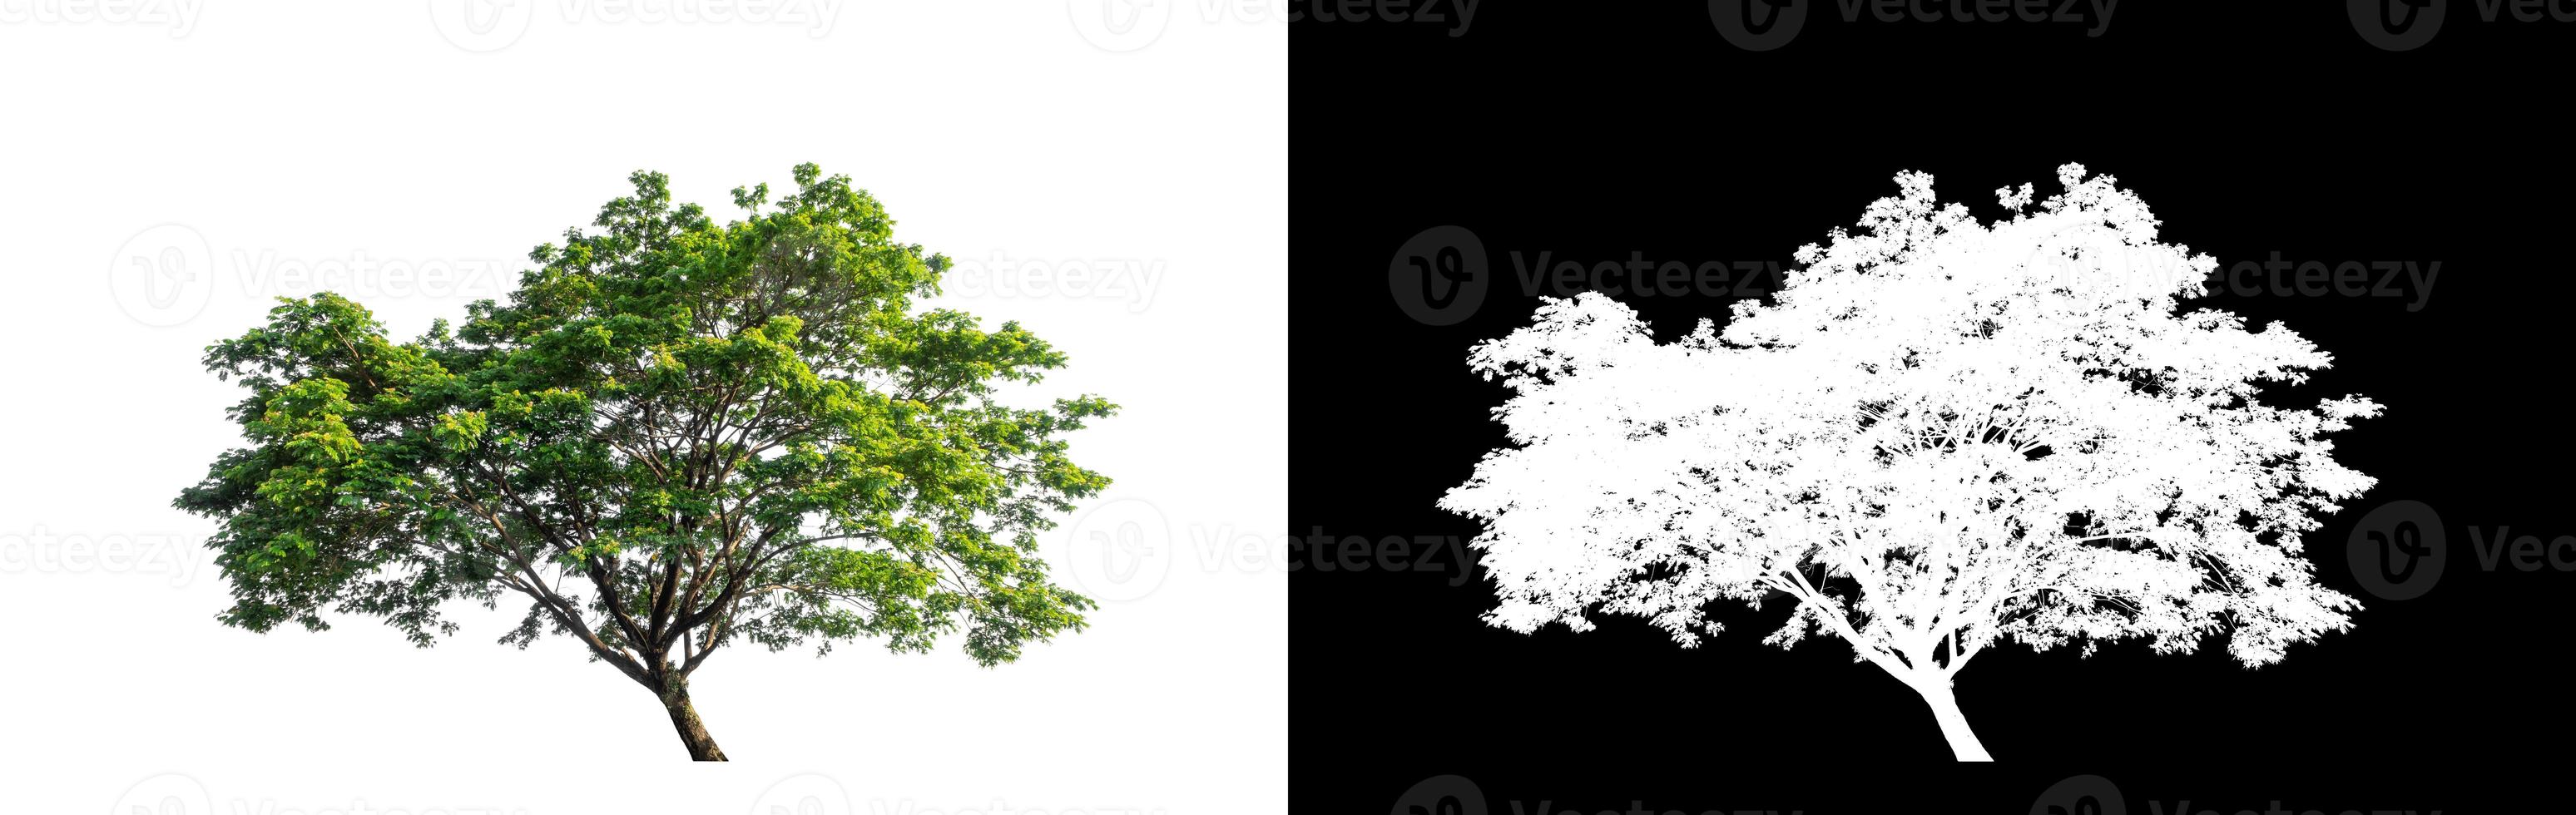 árvore verde isolada em fundo branco com traçado de recorte, única árvore com traçado de recorte e canal alfa em fundo preto foto